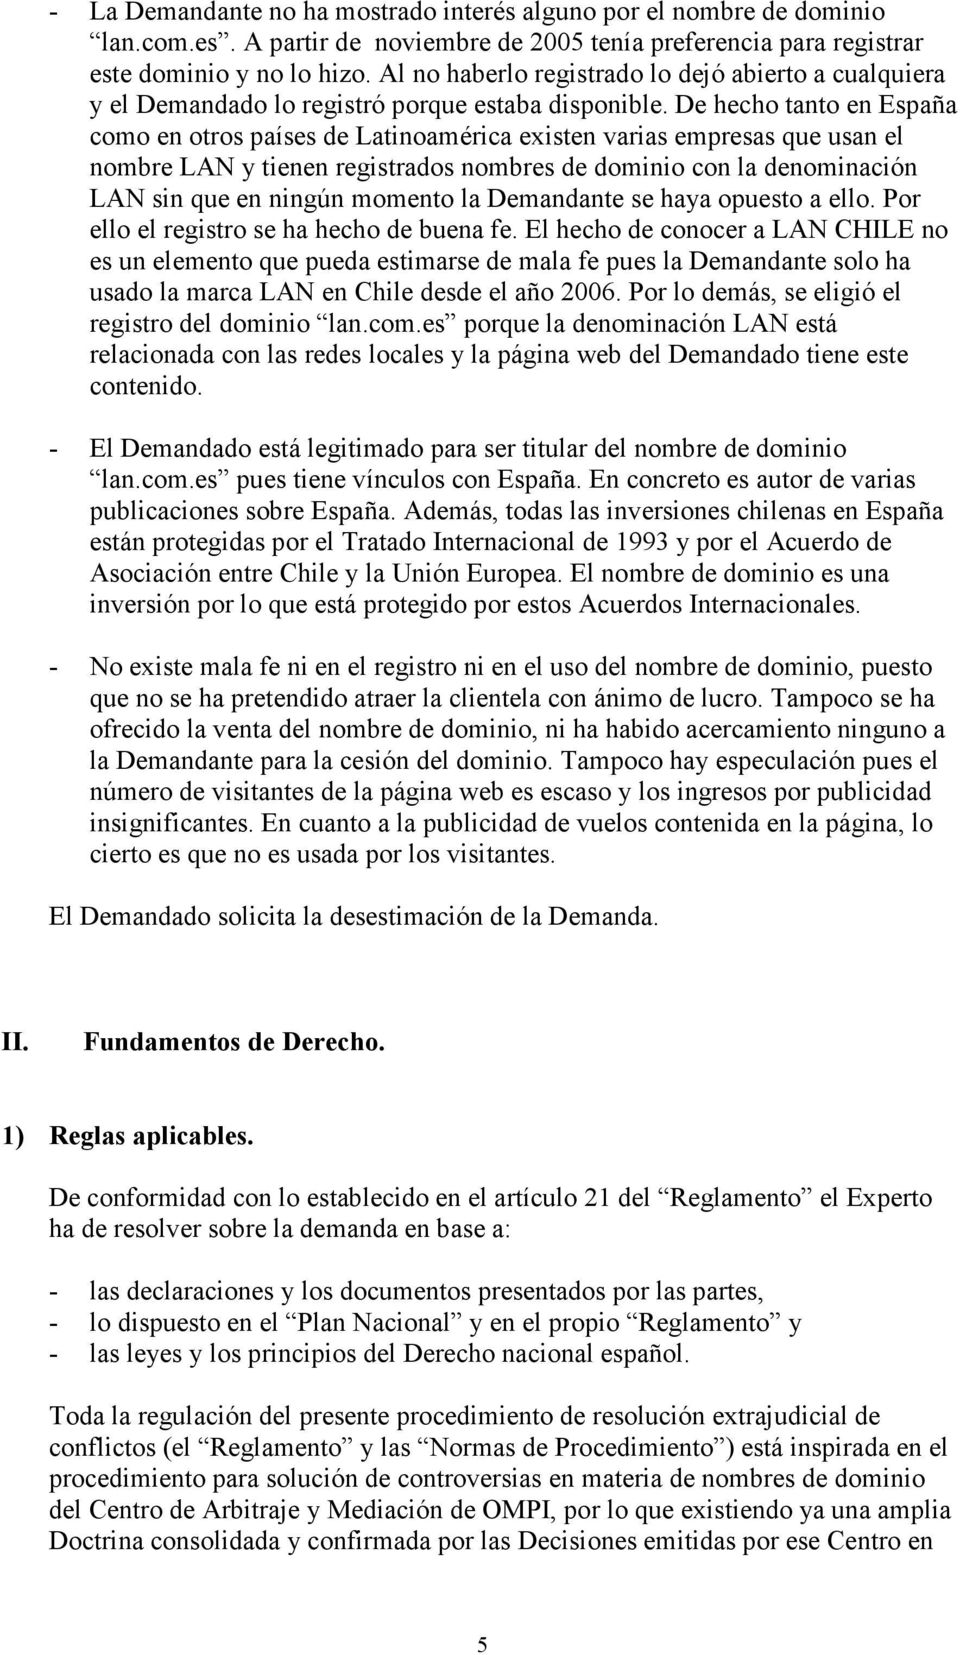 De hecho tanto en España como en otros países de Latinoamérica existen varias empresas que usan el nombre LAN y tienen registrados nombres de dominio con la denominación LAN sin que en ningún momento